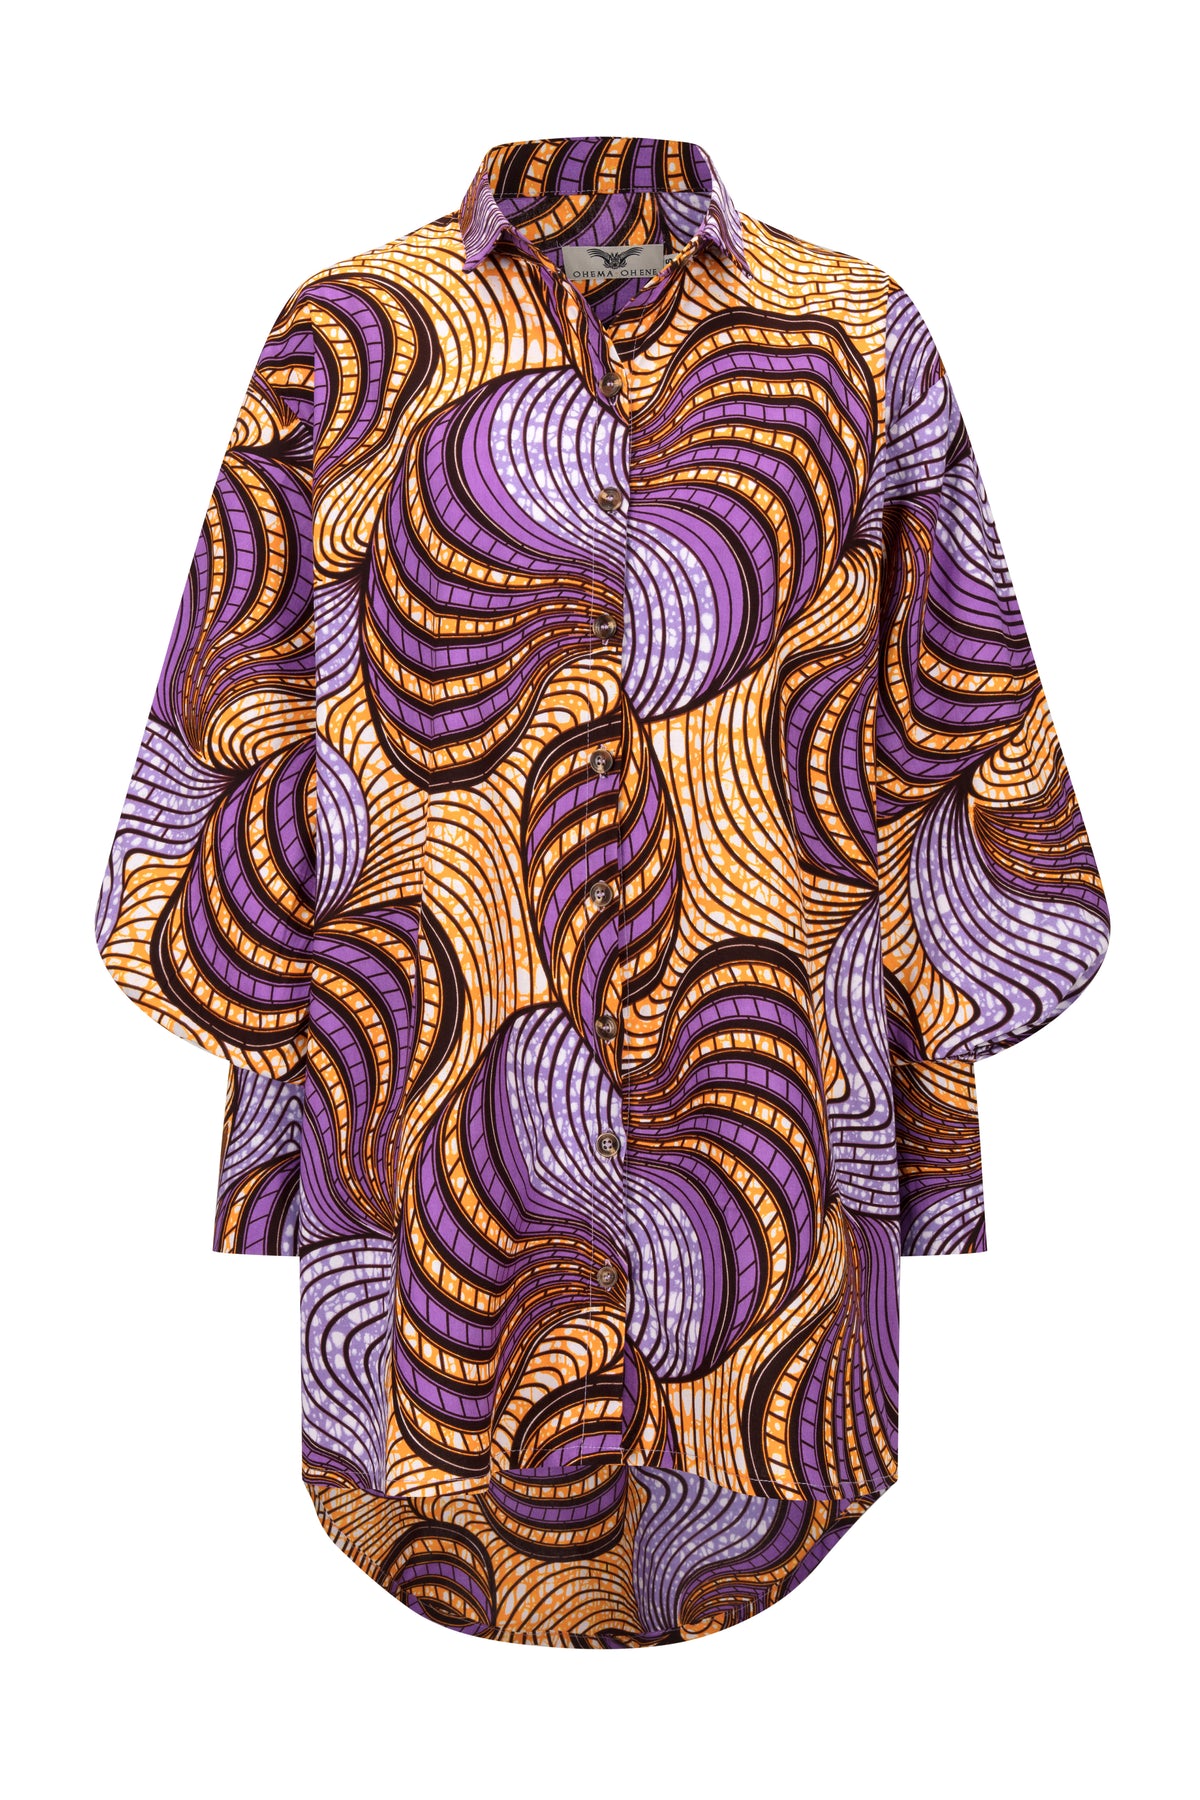 Sarah oversized exaggerated sleeve shirt dress – OHEMA OHENE AFRICAN ...